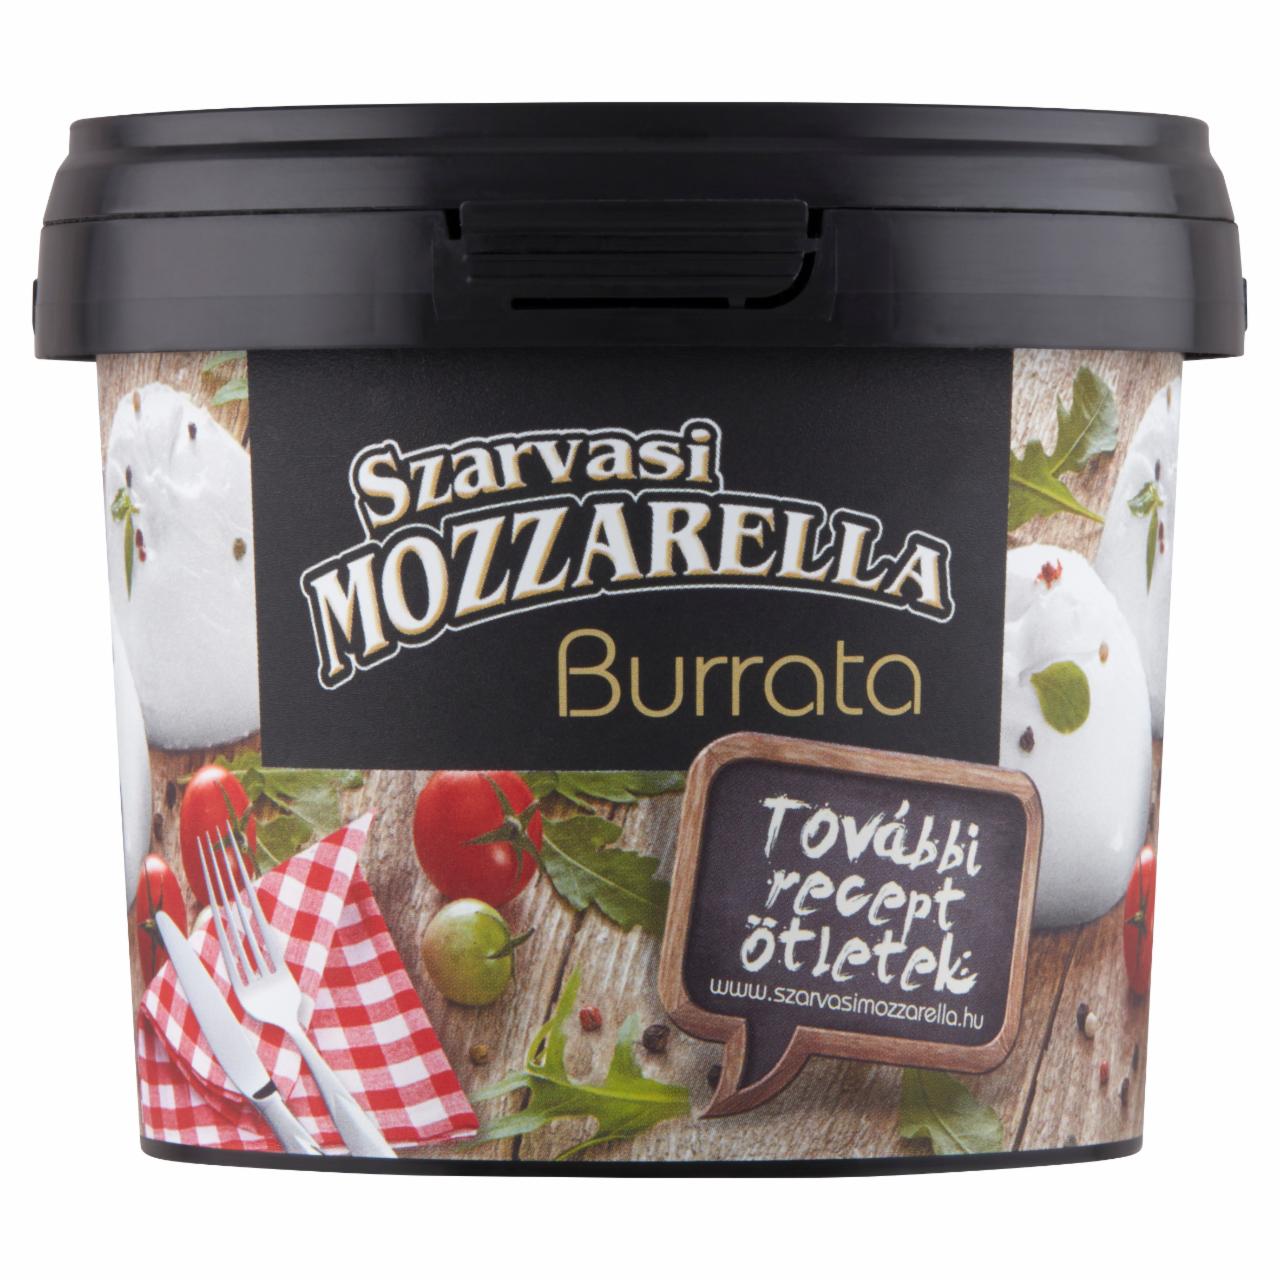 Képek - Szarvasi Mozzarella Burrata tejszínes sajttal töltött mozzarella 150 g